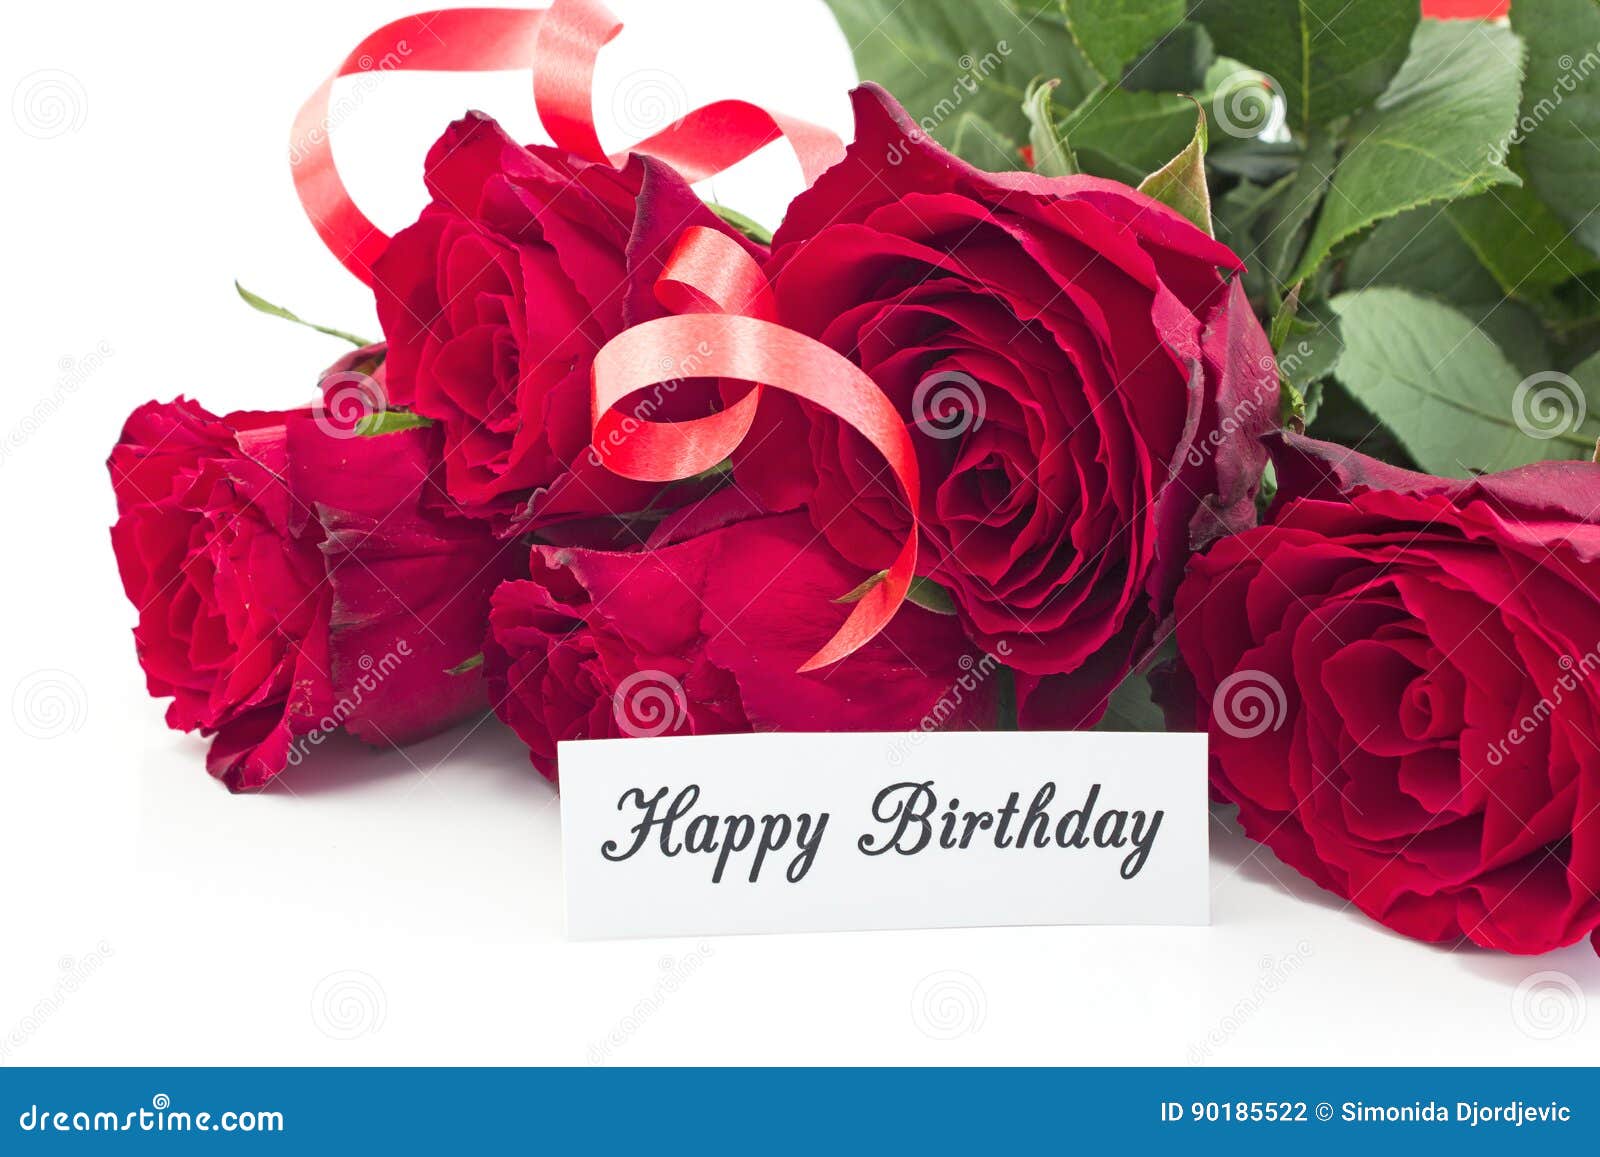 Biglietto Di Auguri Per Il Compleanno Felice Con Il Mazzo Delle Rose Rosse Fotografia Stock Immagine Di Frase Fragrante